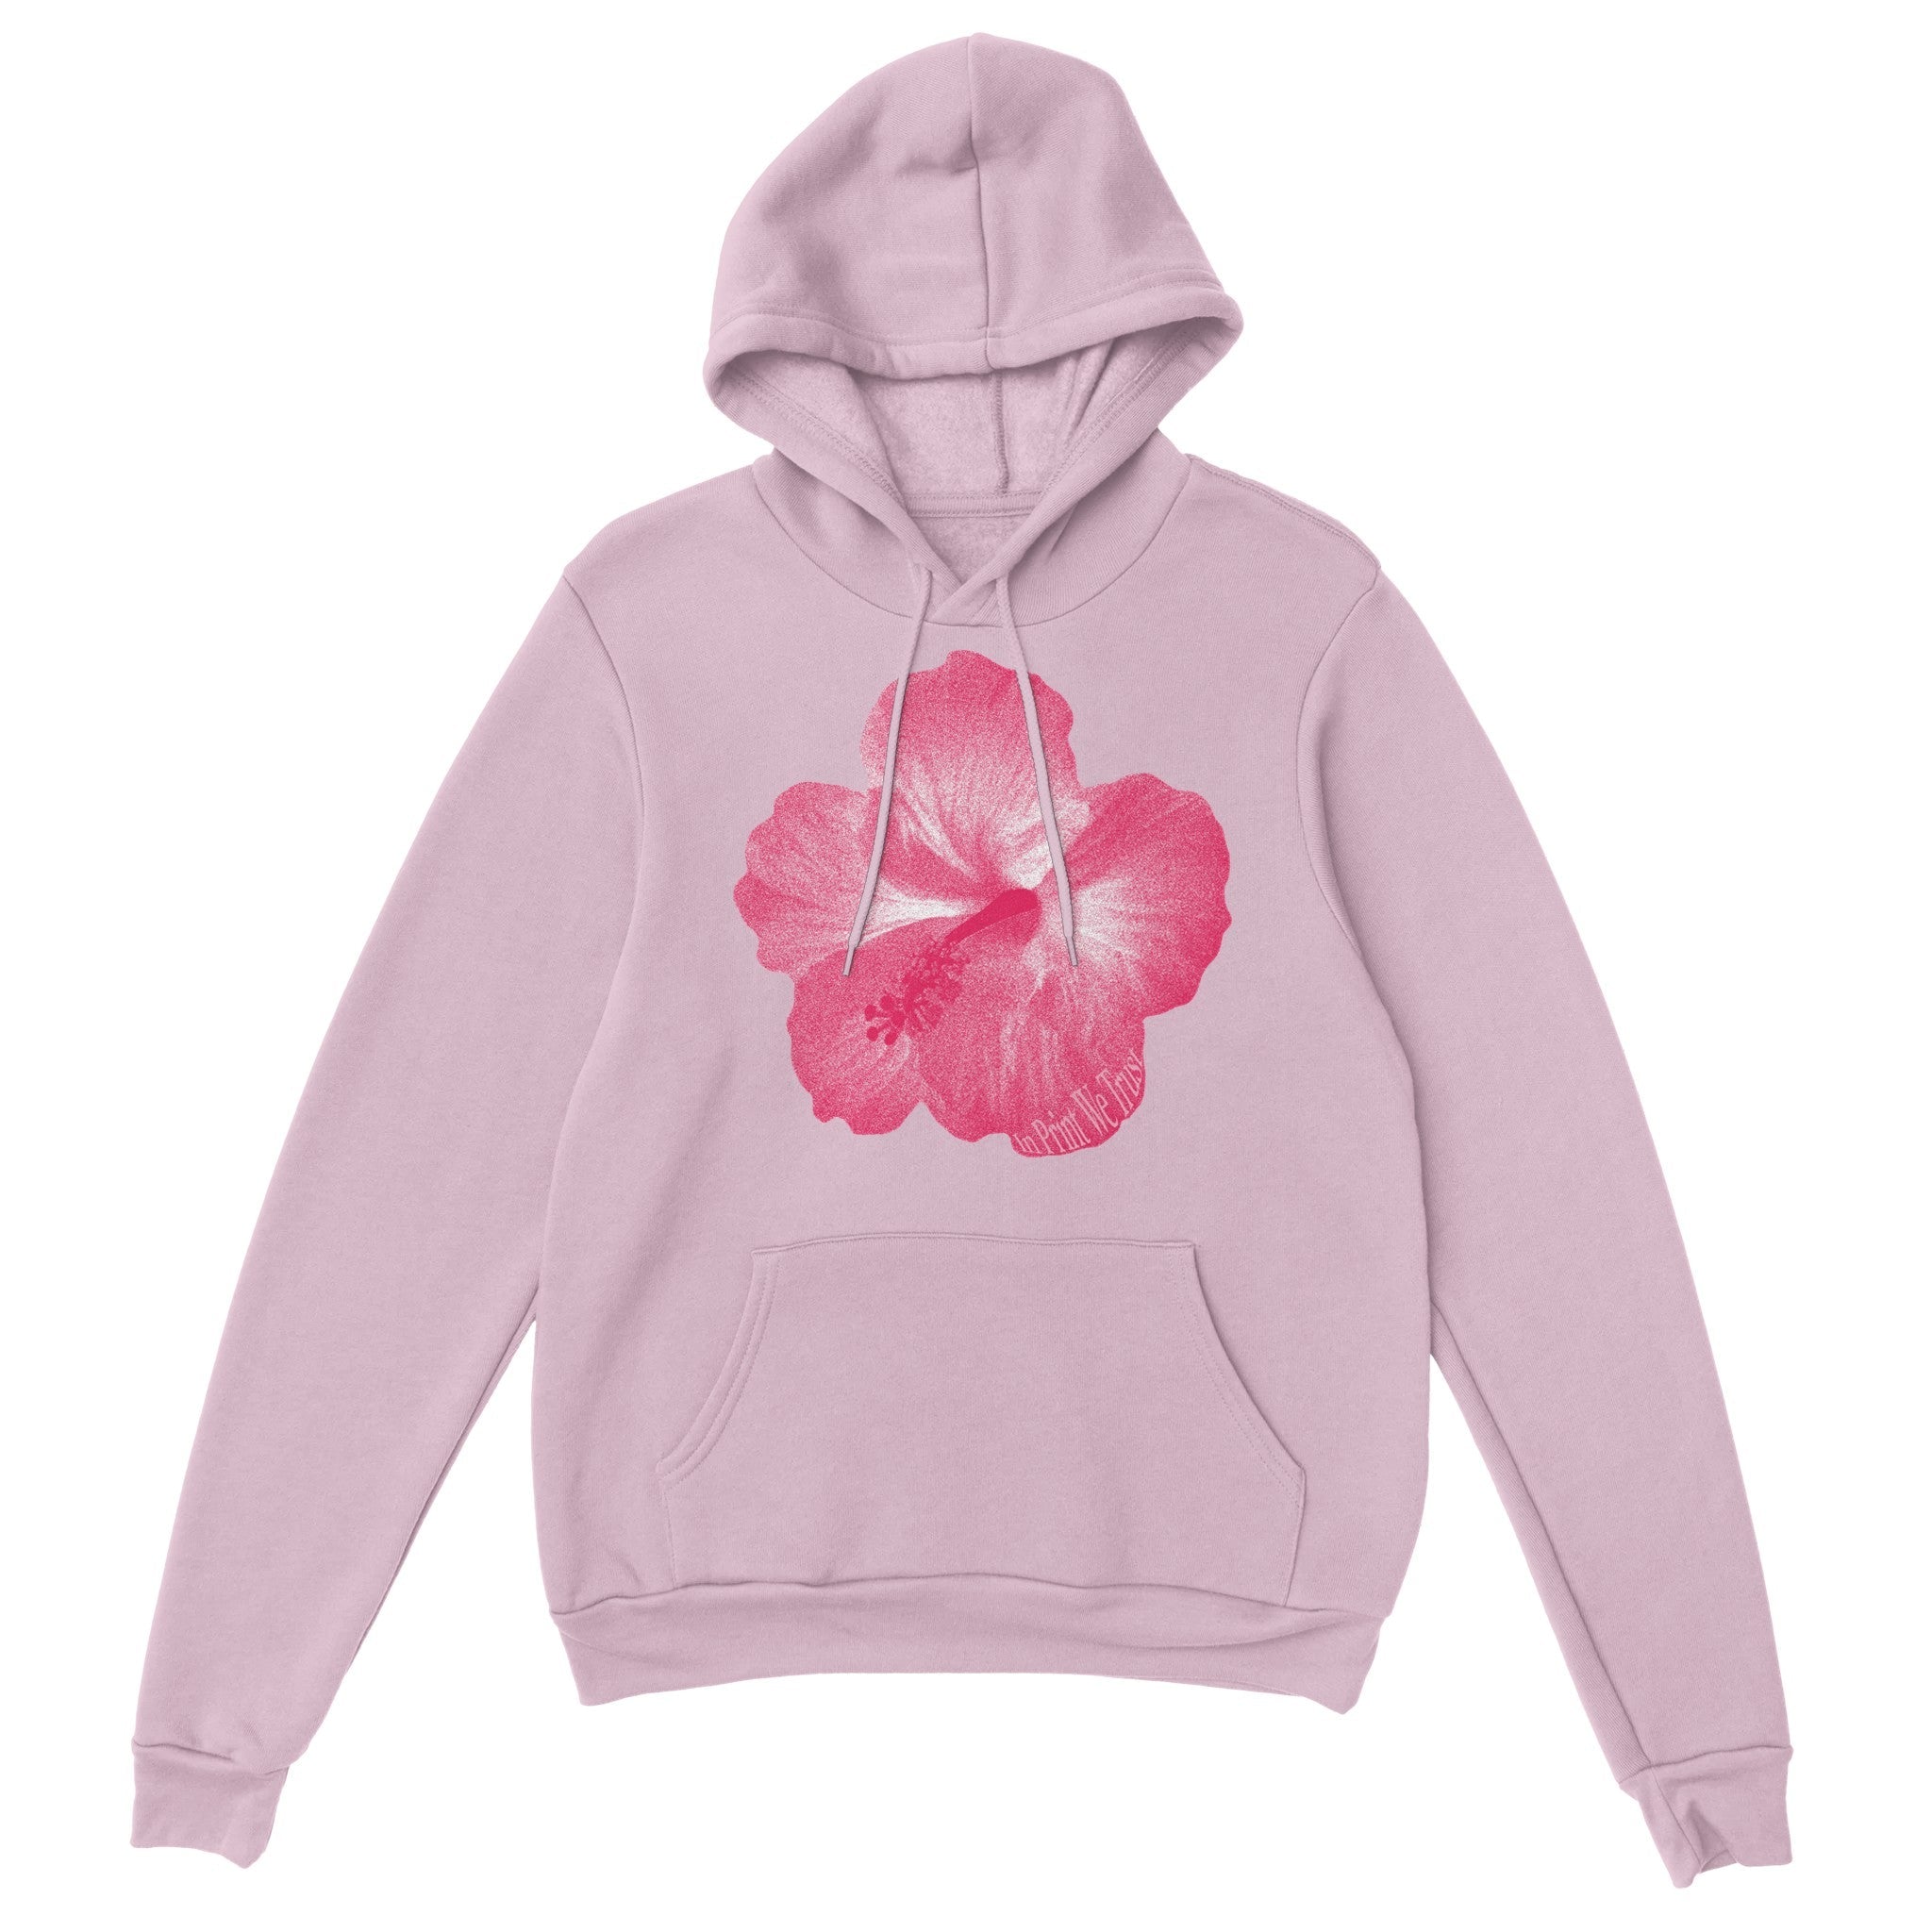 'Hibiscus' hoodie - In Print We Trust